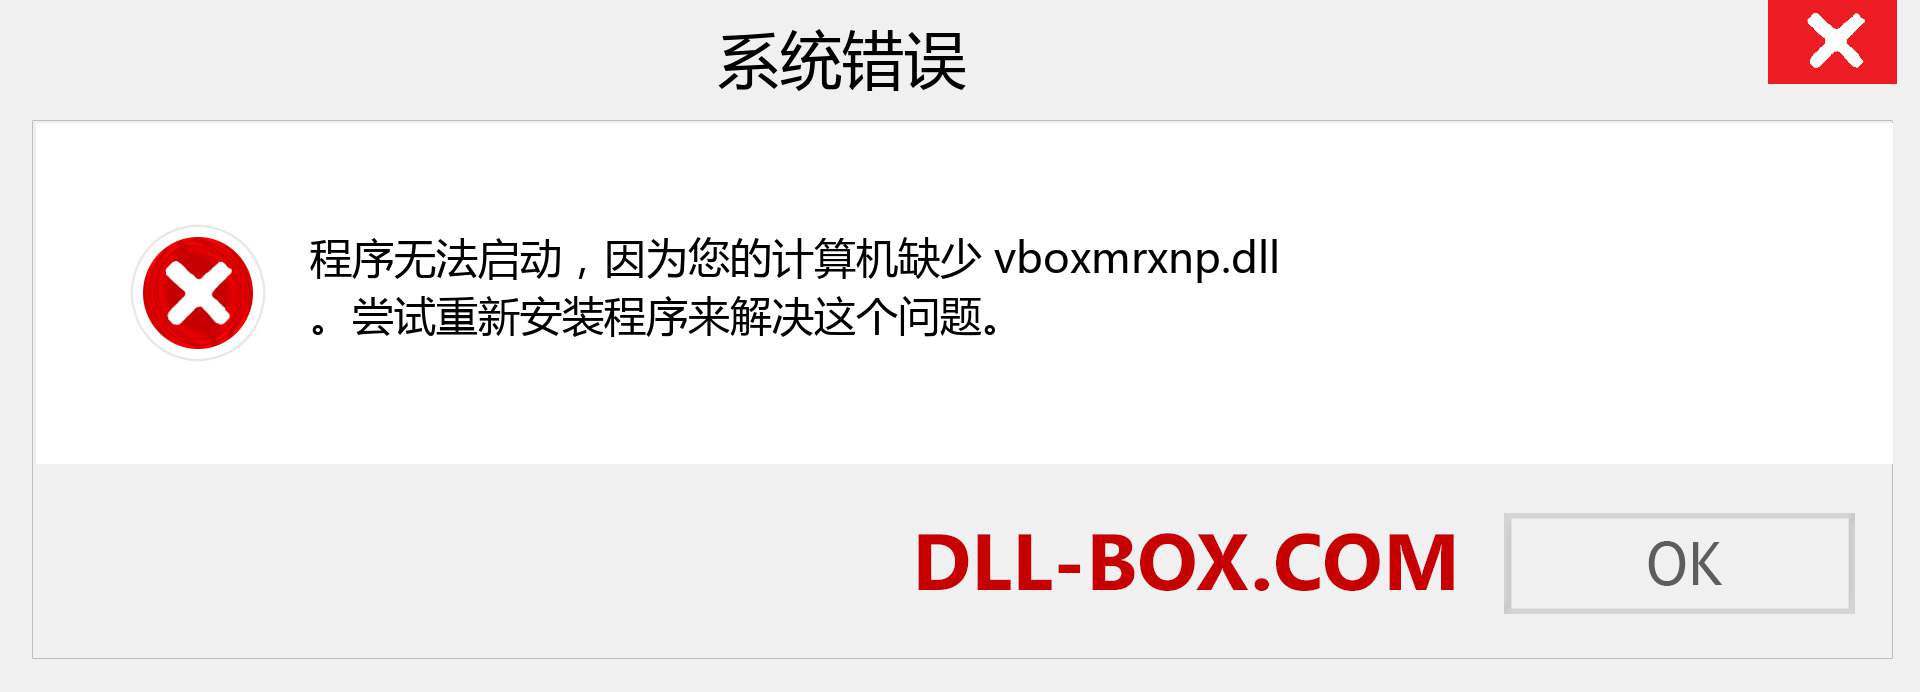 vboxmrxnp.dll 文件丢失？。 适用于 Windows 7、8、10 的下载 - 修复 Windows、照片、图像上的 vboxmrxnp dll 丢失错误